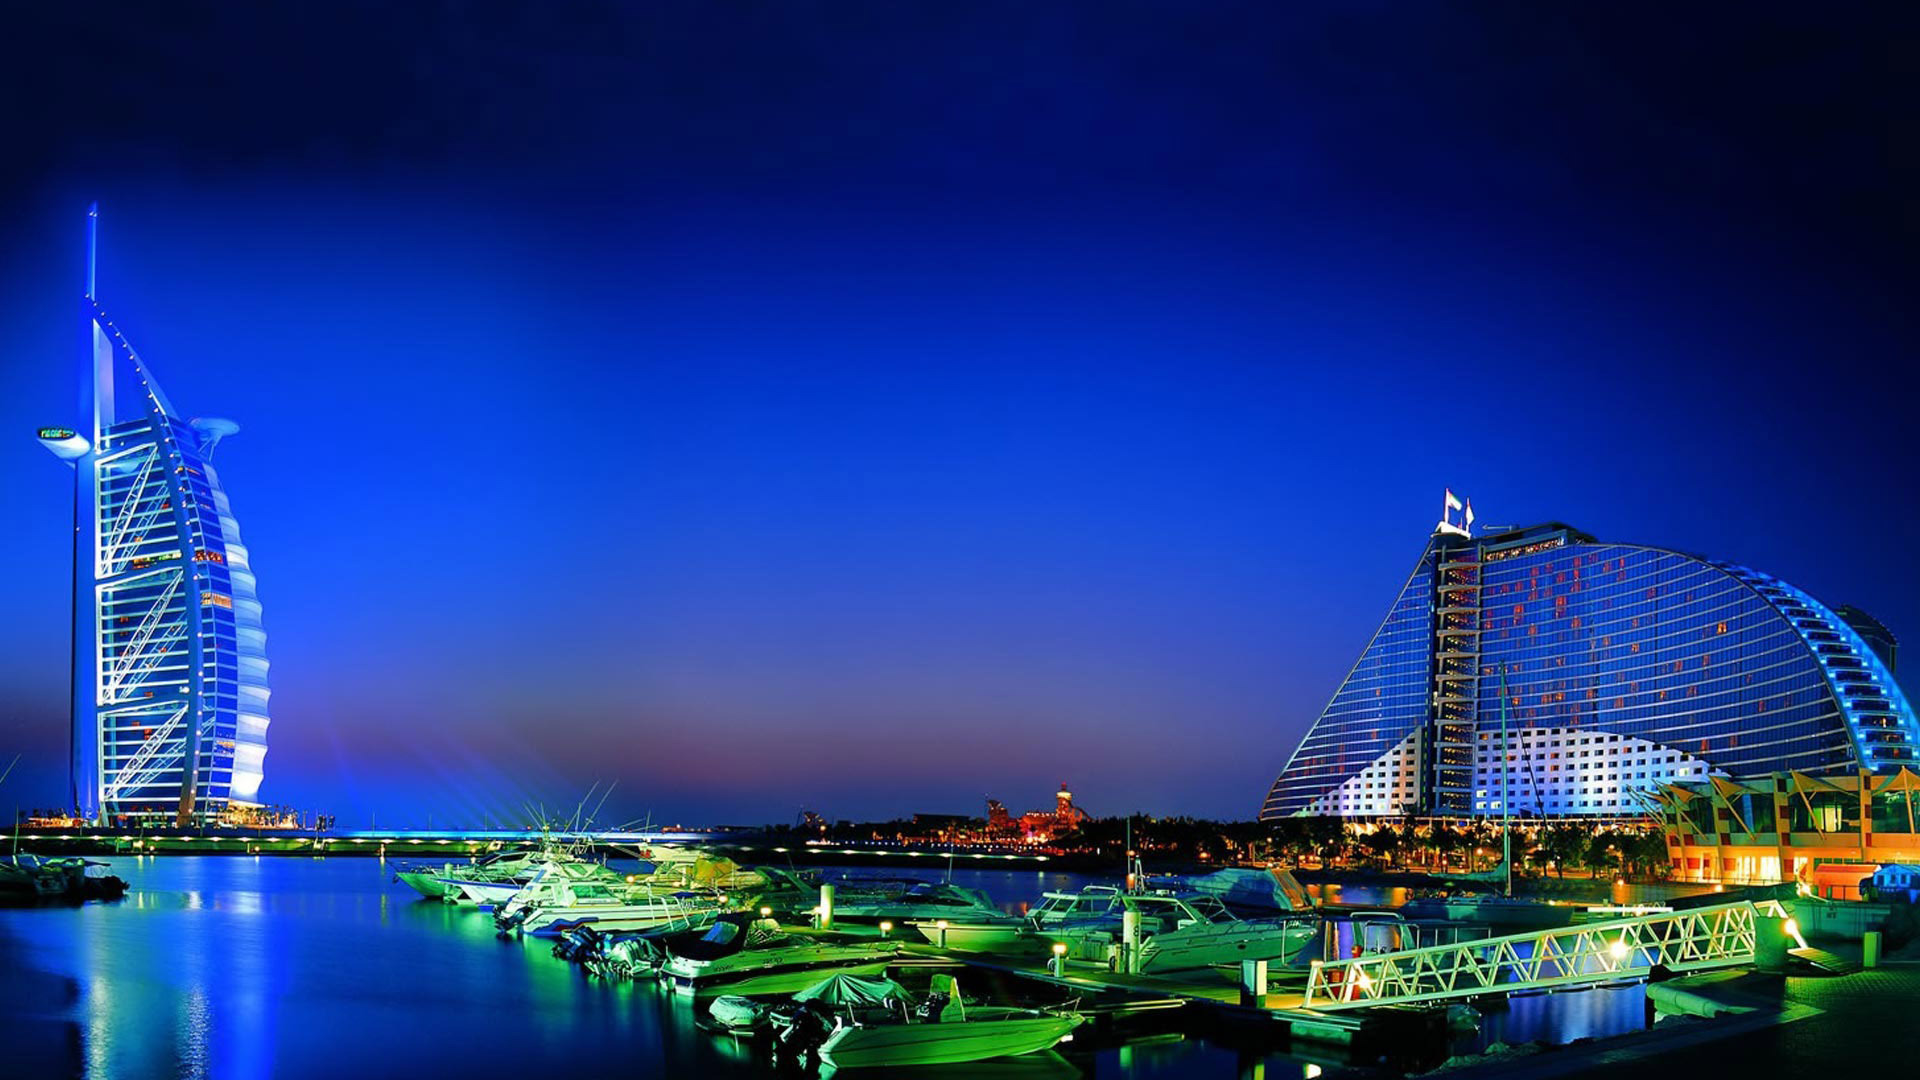 迪拜热门游记,迪拜自助游游记,迪拜旅游热门游记 - 马图片